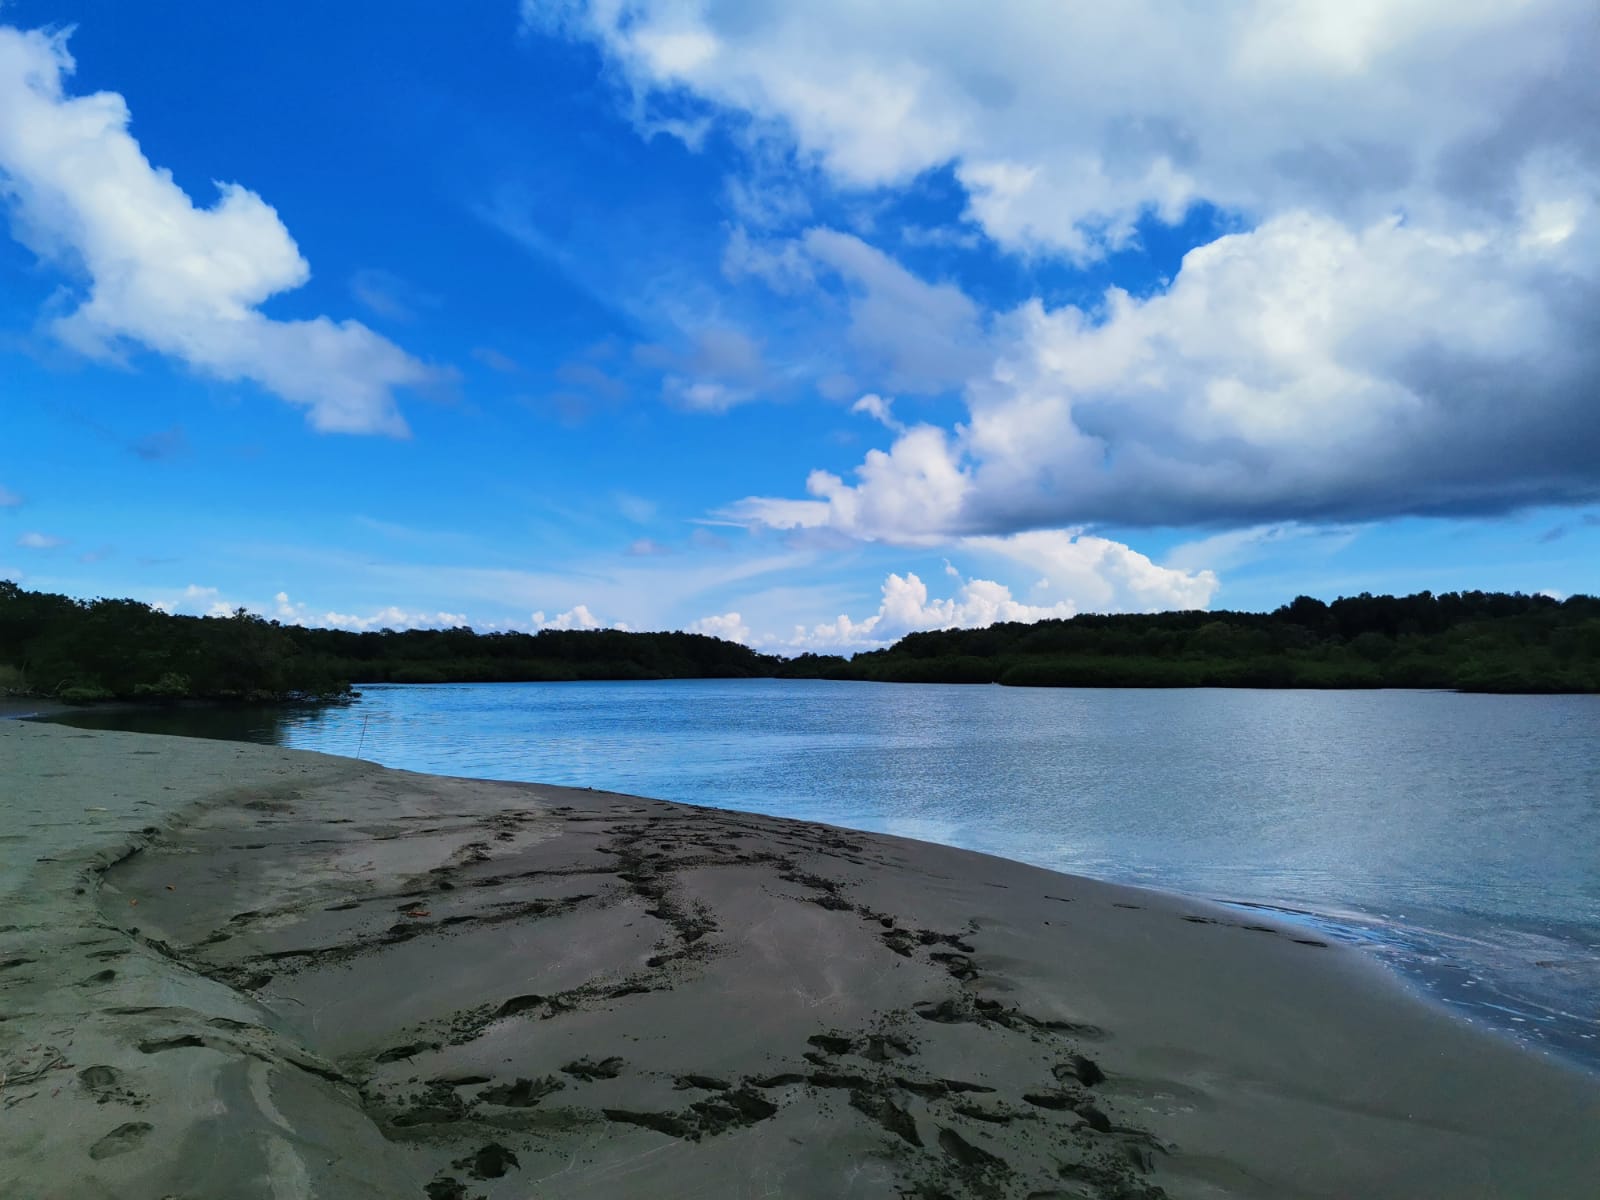 Foto de Playa Puntarenitas com água turquesa superfície